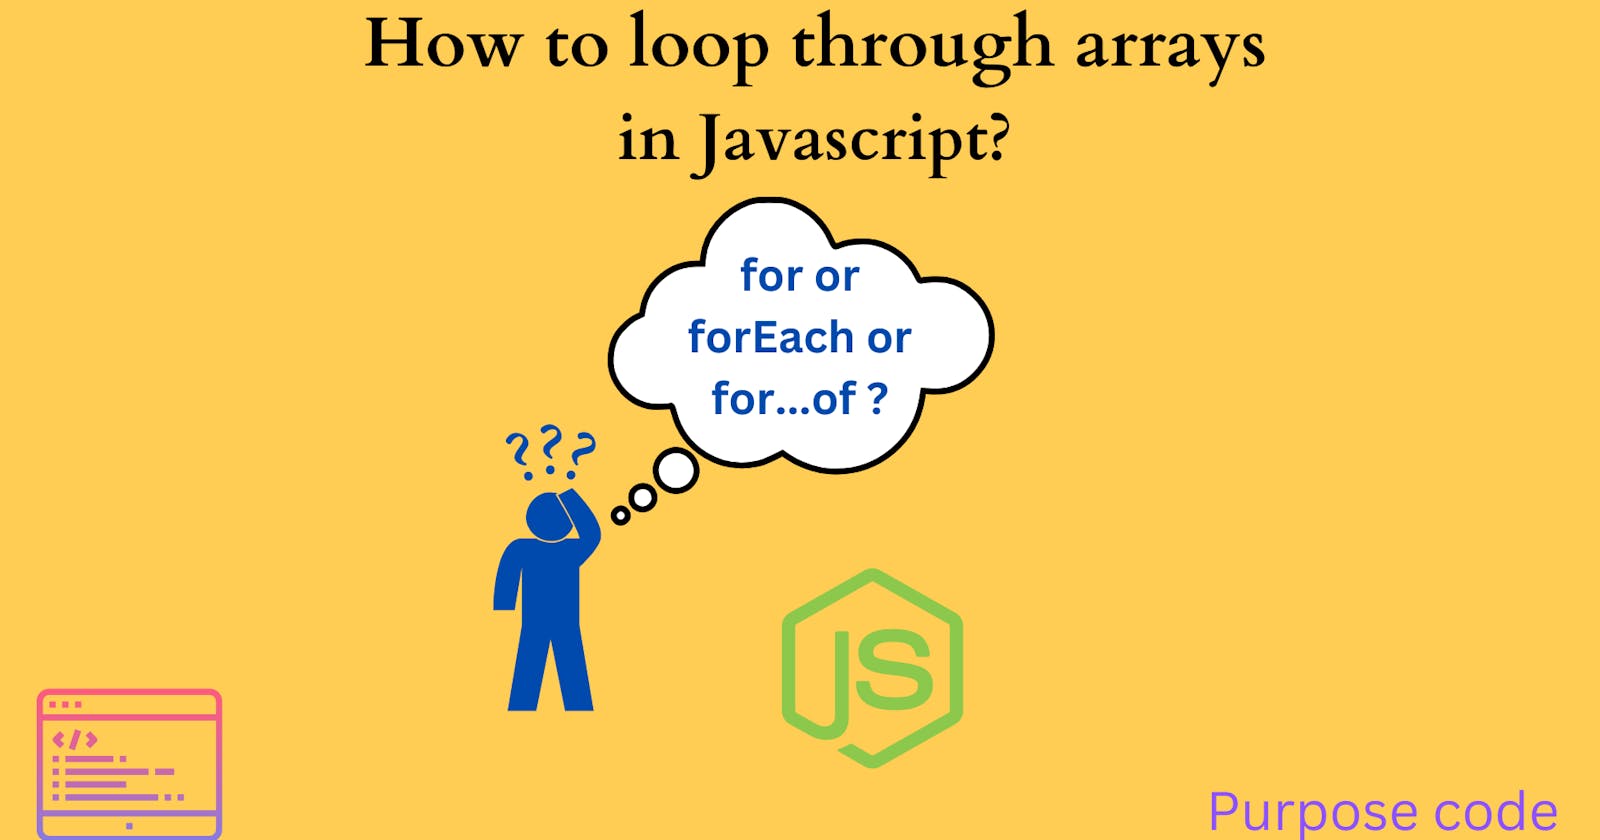 Loop through arrays in Javascript